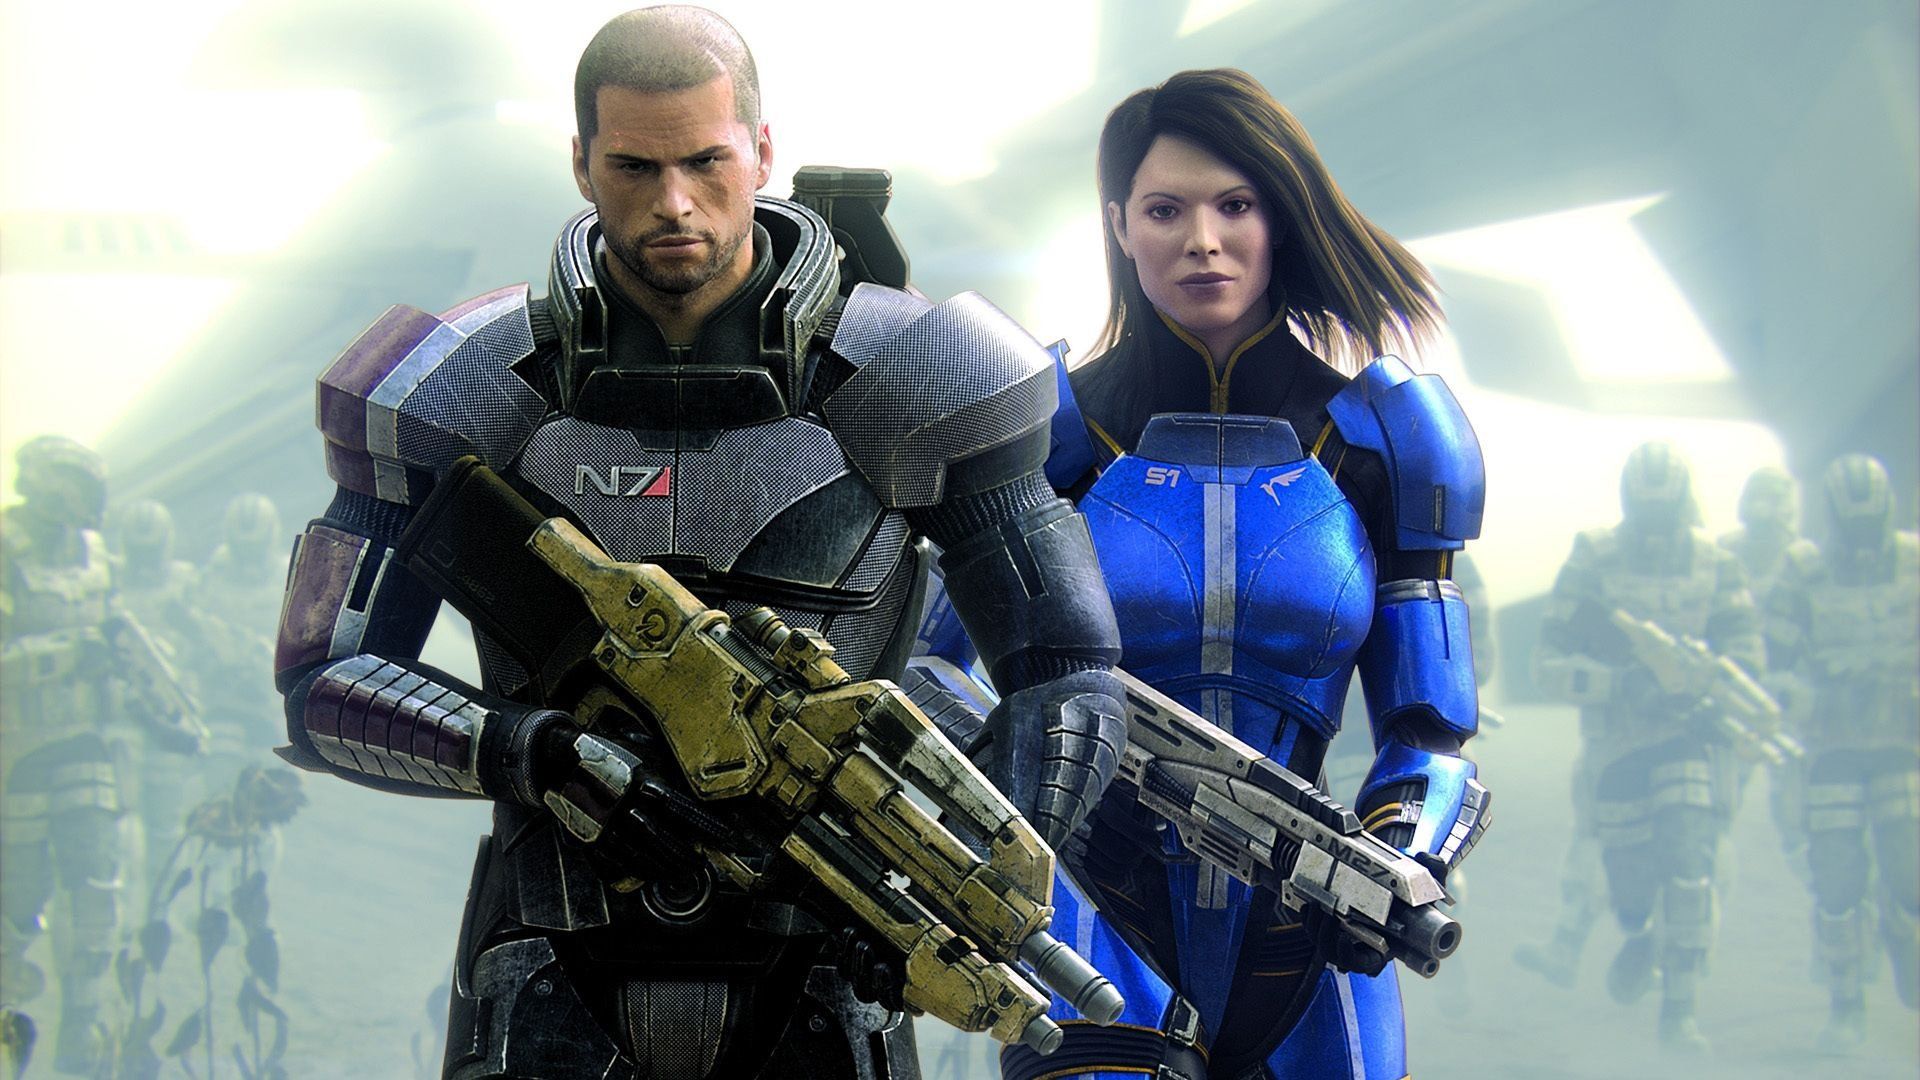 Mass Effect™ издание Legendary for ios download free